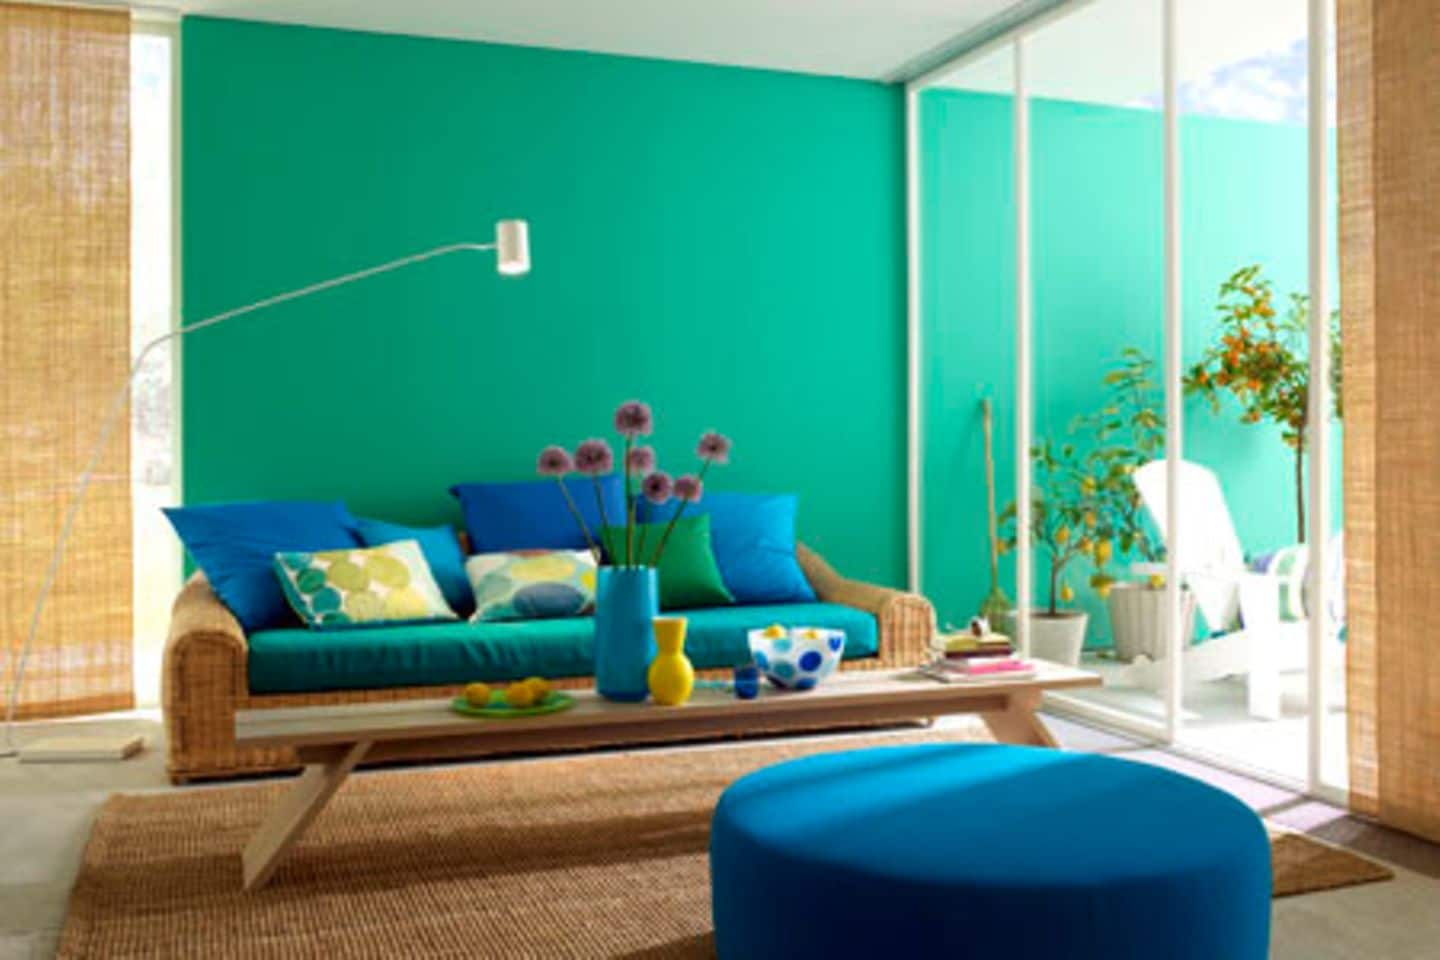 WAndfarbe Blau, Türkis mit Möbeln in Blau und Rattan